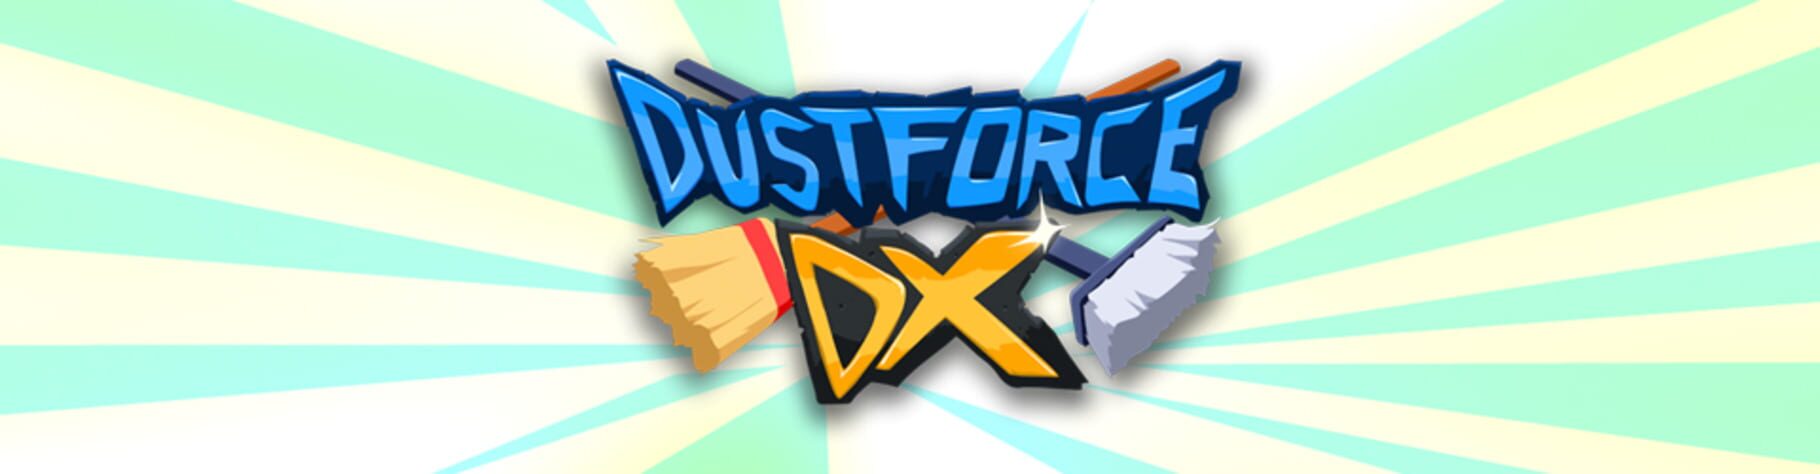 Artwork for Dustforce DX